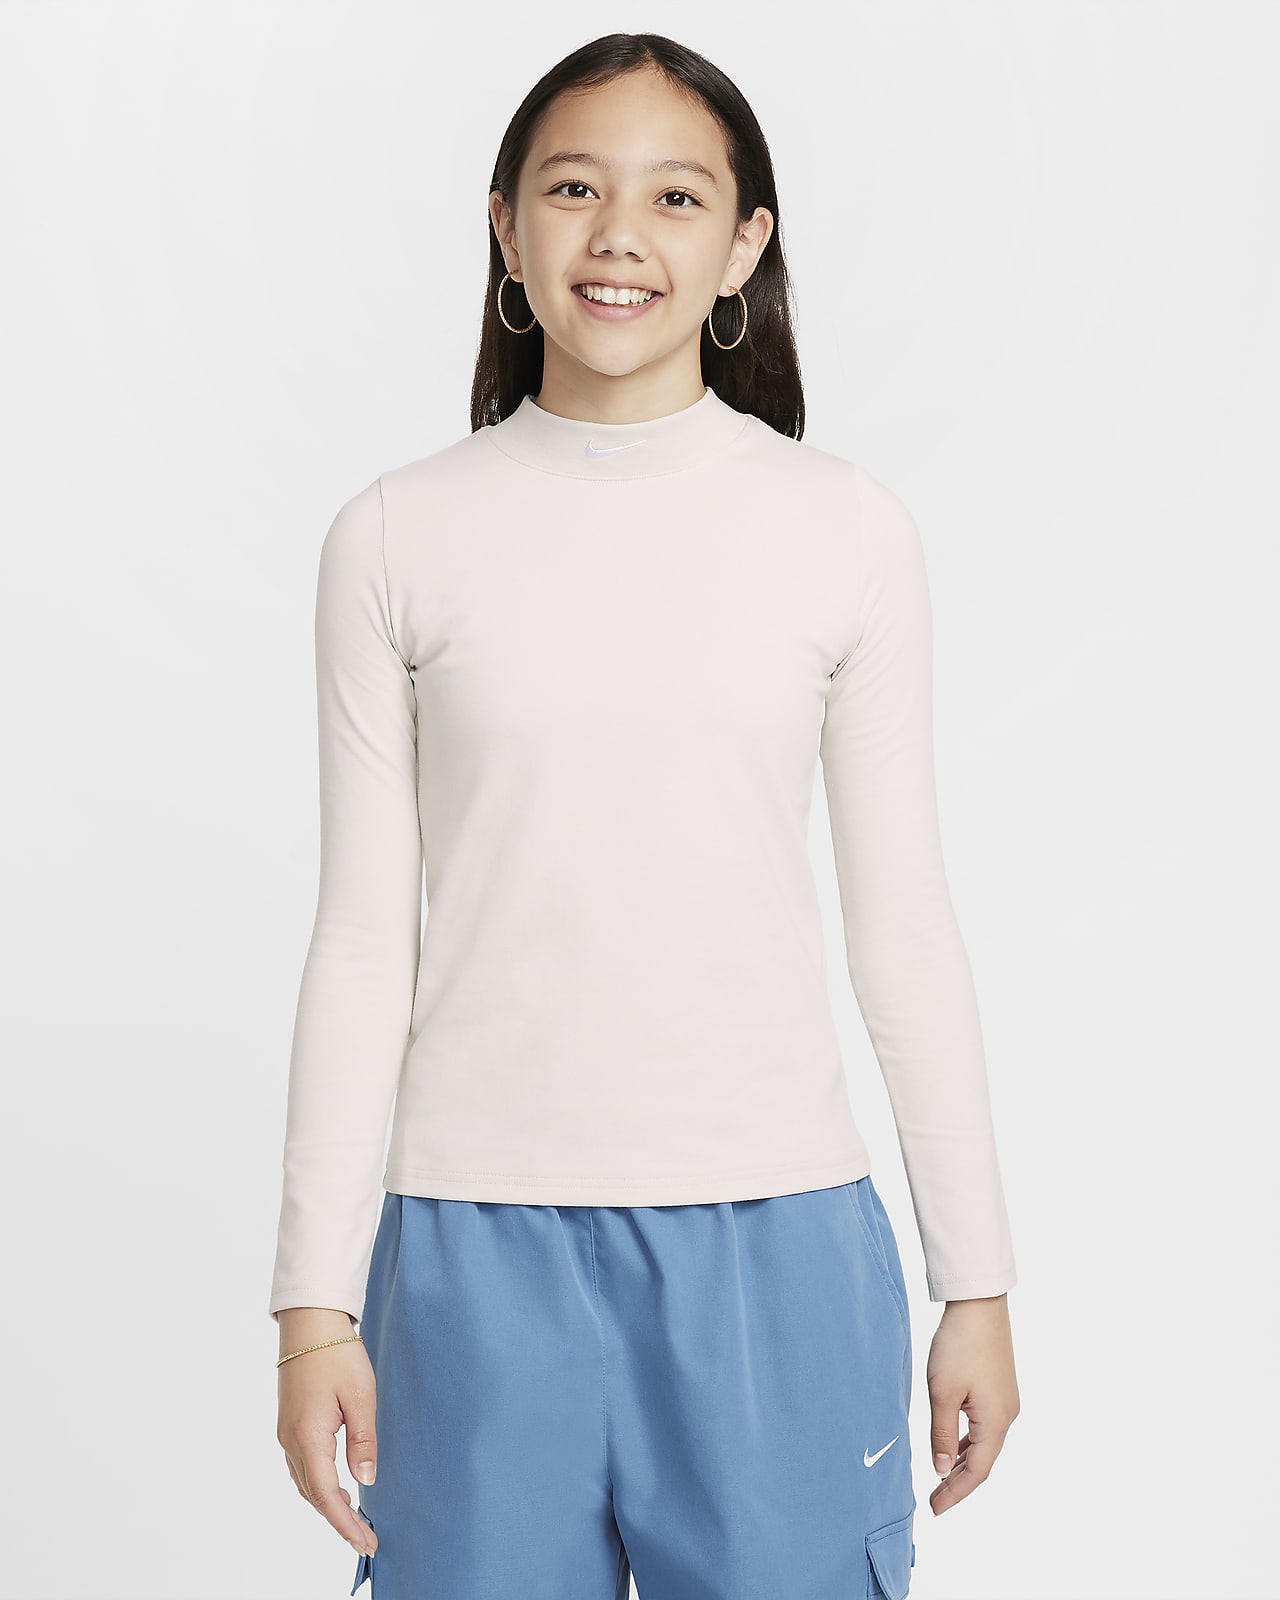 Nike Sportswear Girls' Long-Sleeve Top